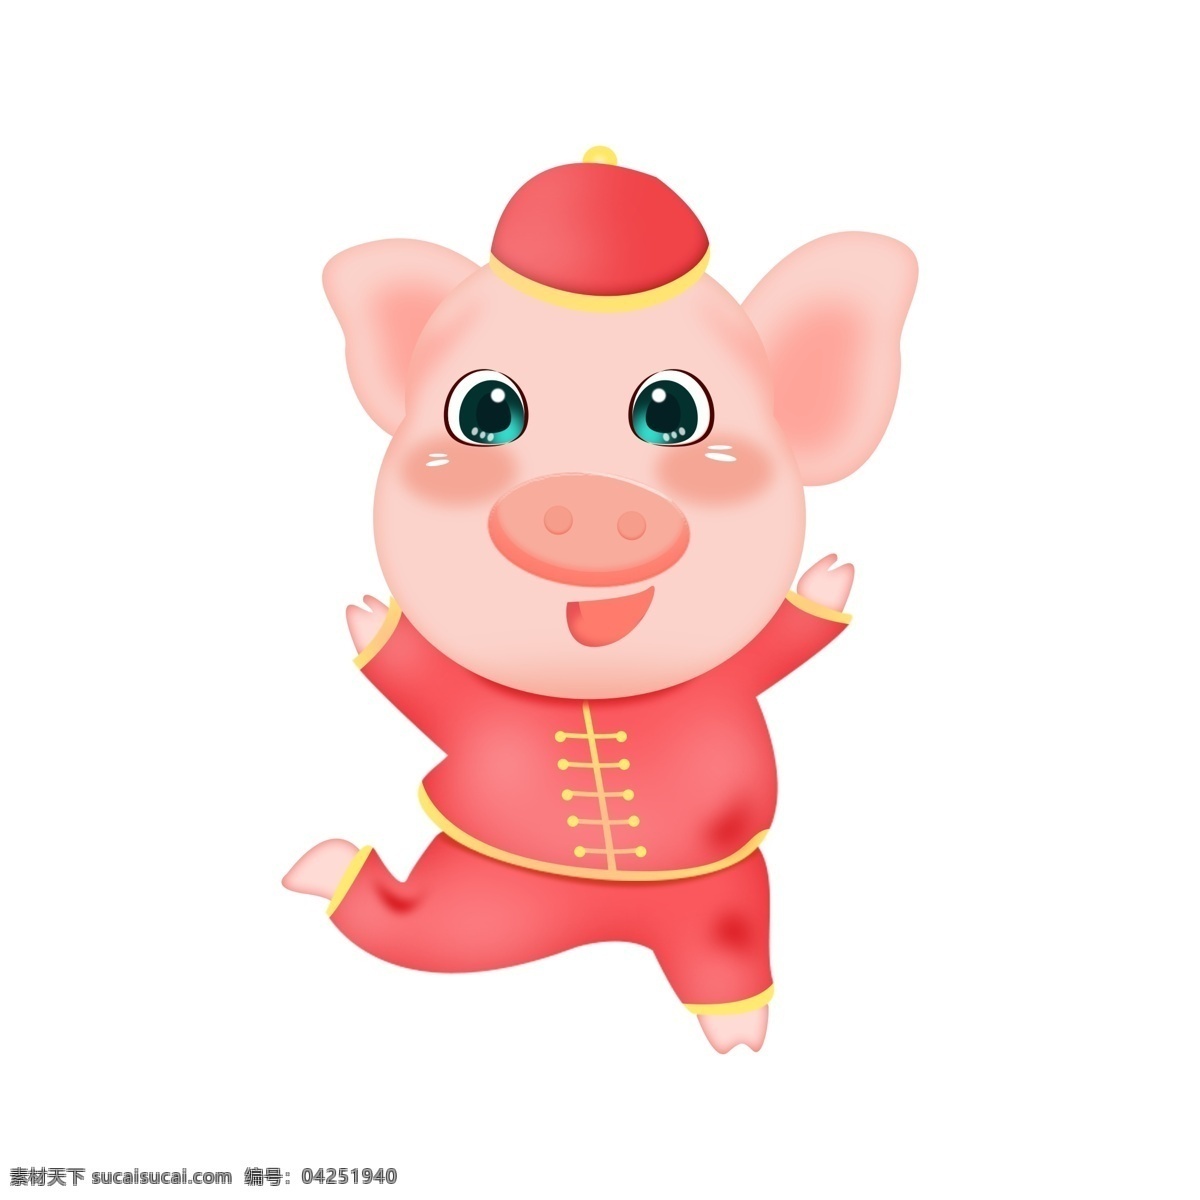 2019 吉祥 小 猪 矢量图 2019年 吉祥猪 猪年 形象 卡通猪猪 可爱的猪 吉祥猪猪 红红火火 吉祥物 猪八戒 新年